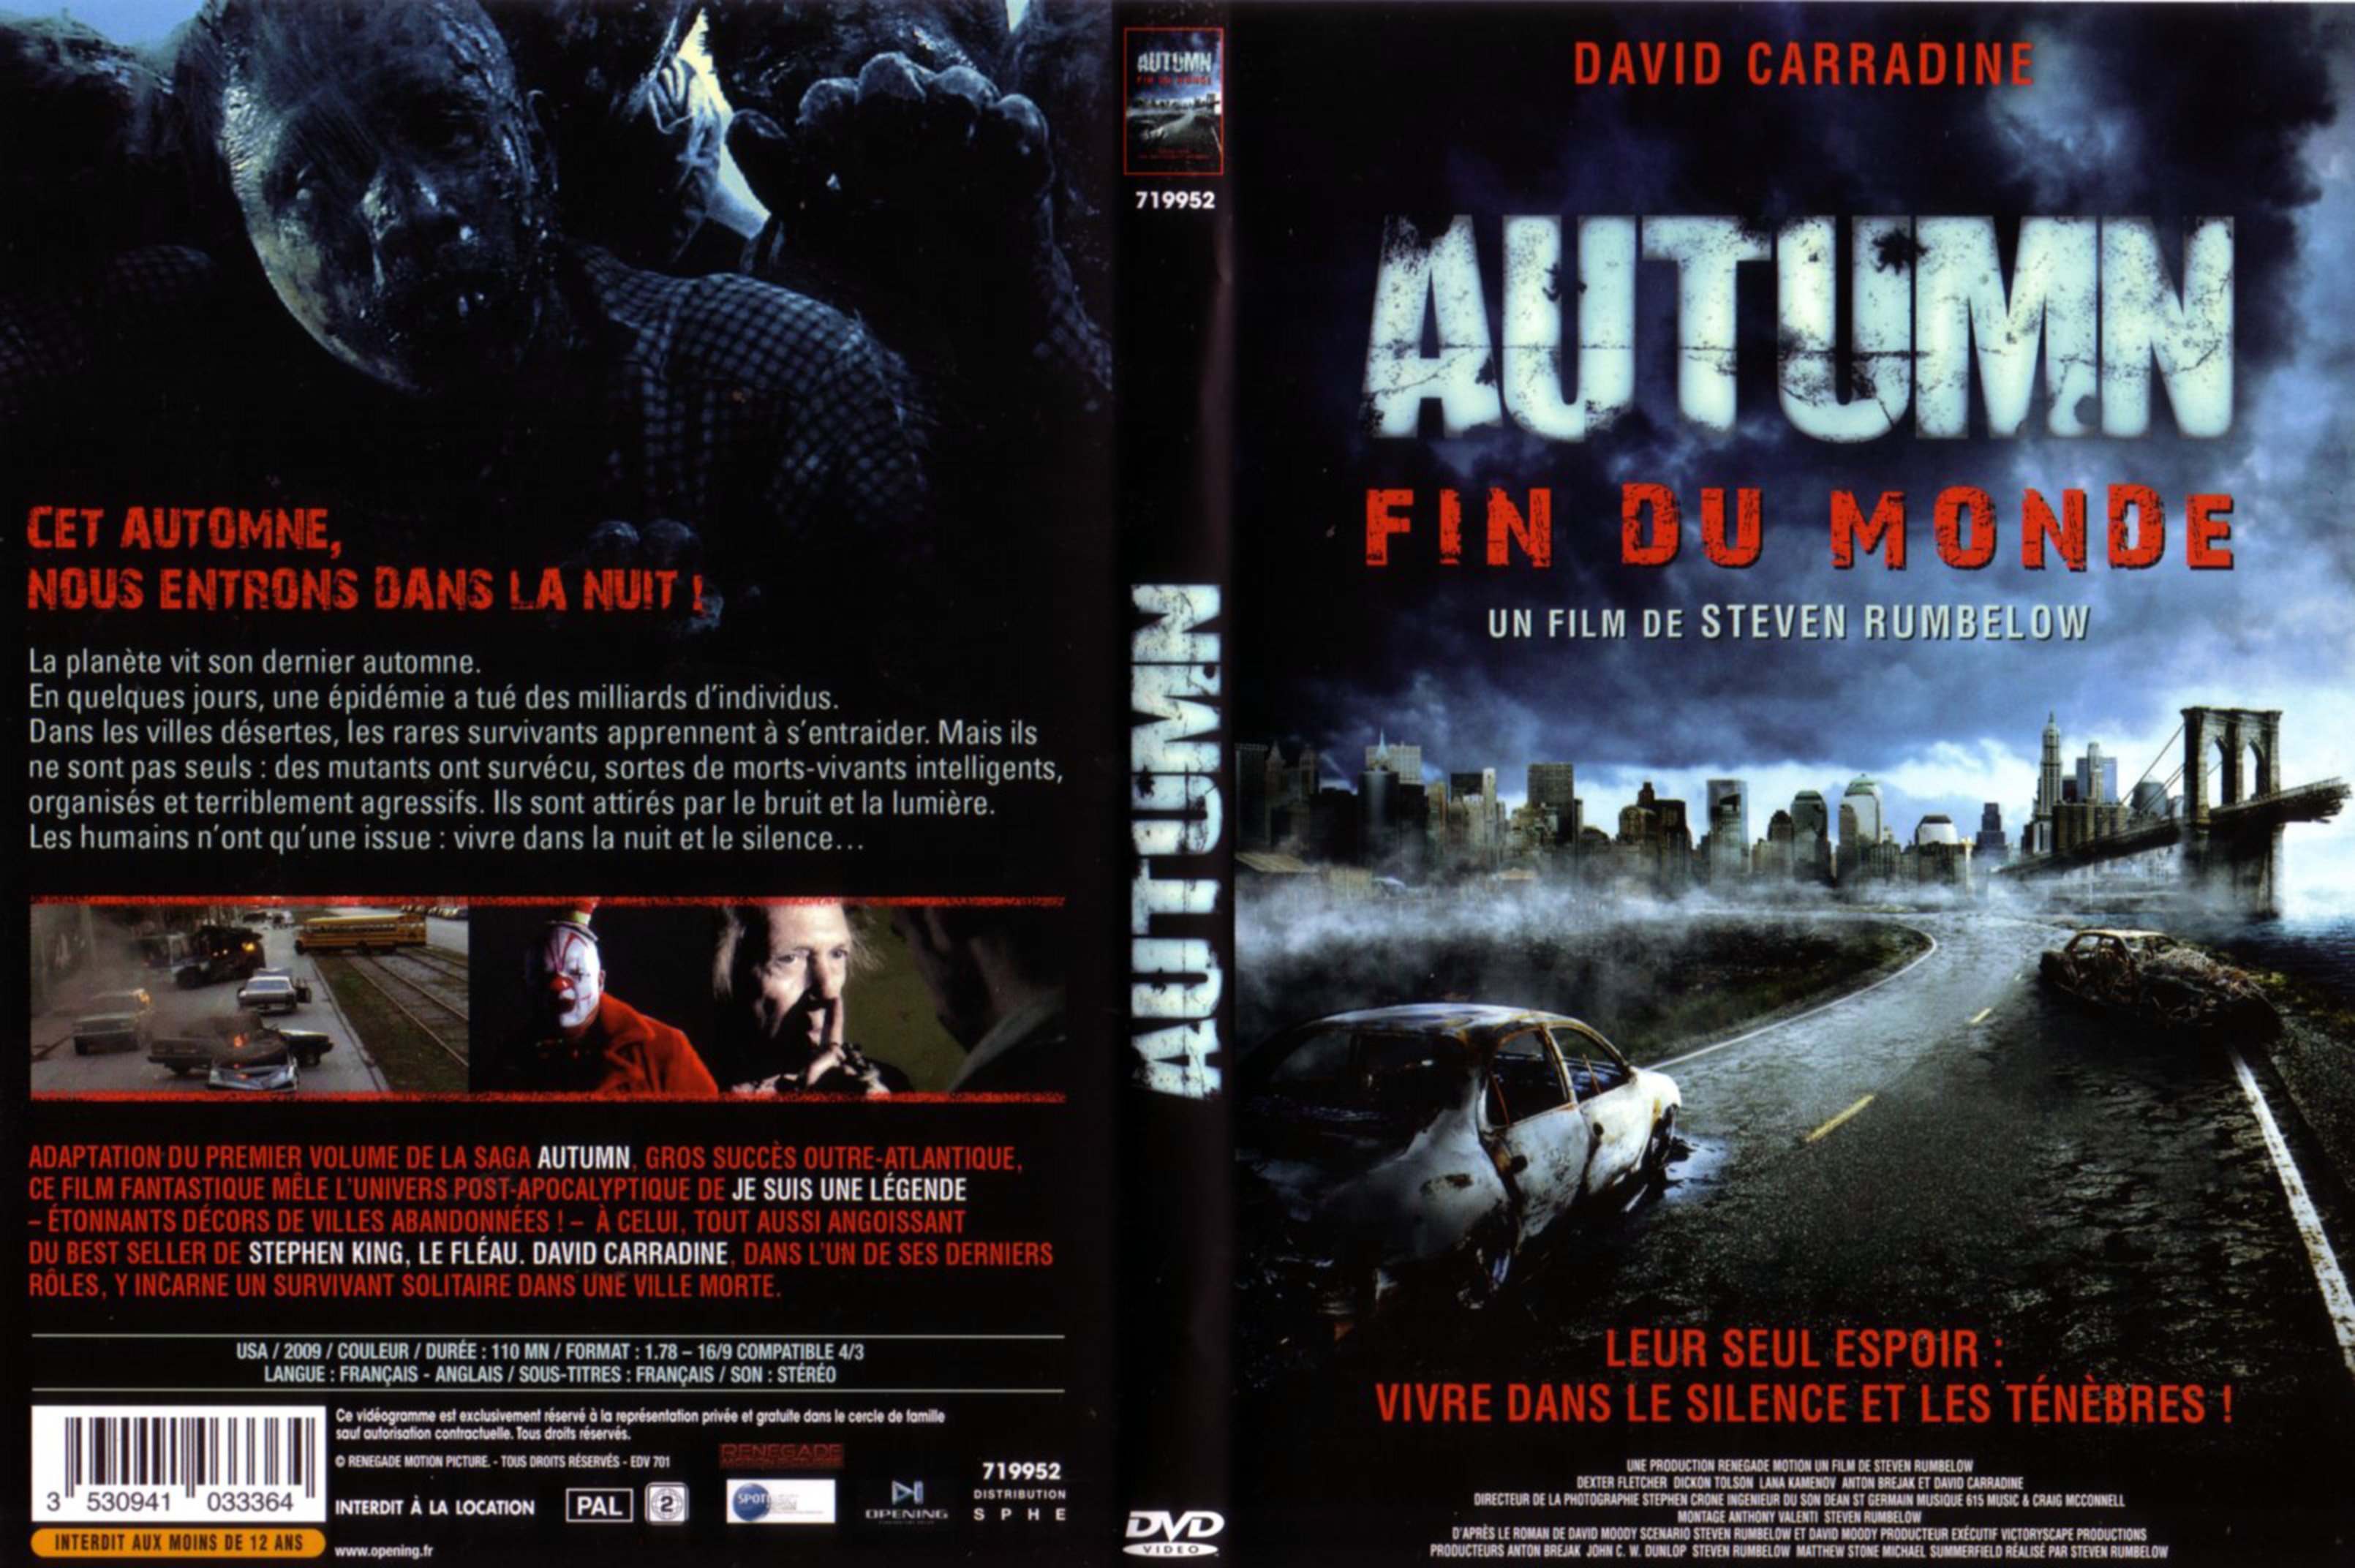 Jaquette DVD Autumn fin du monde